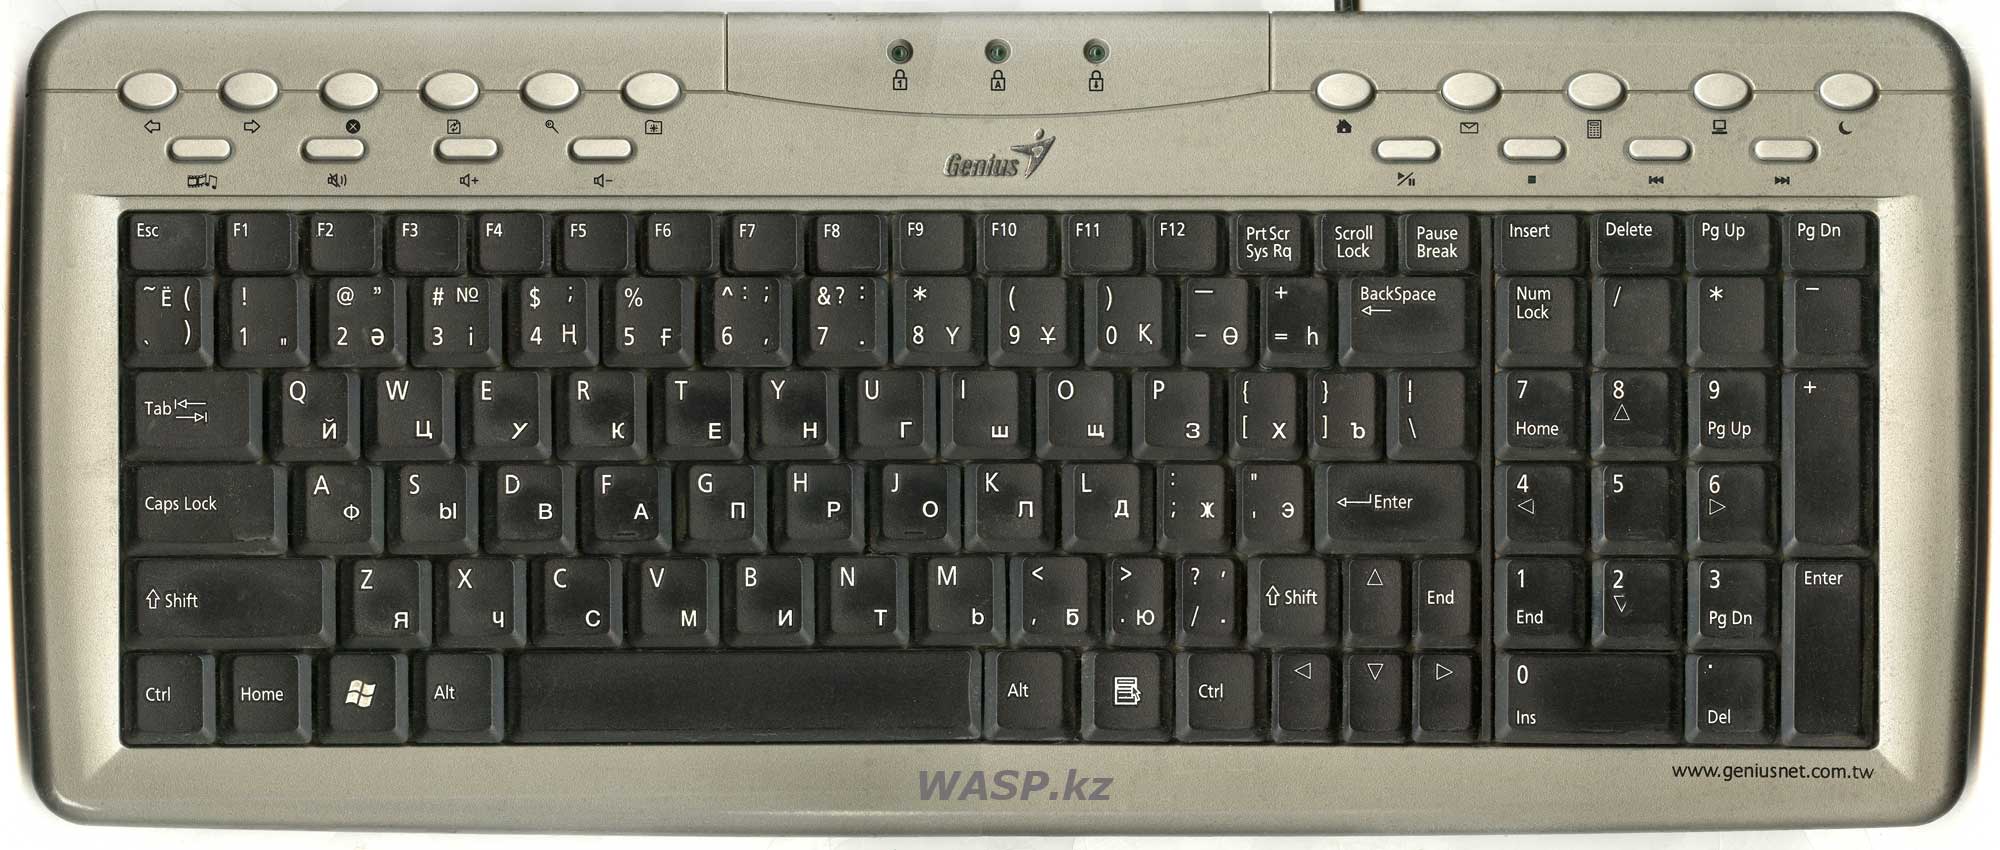 Genius KB-0368 или KB-19e NB полное описание компьютерной клавиатуры